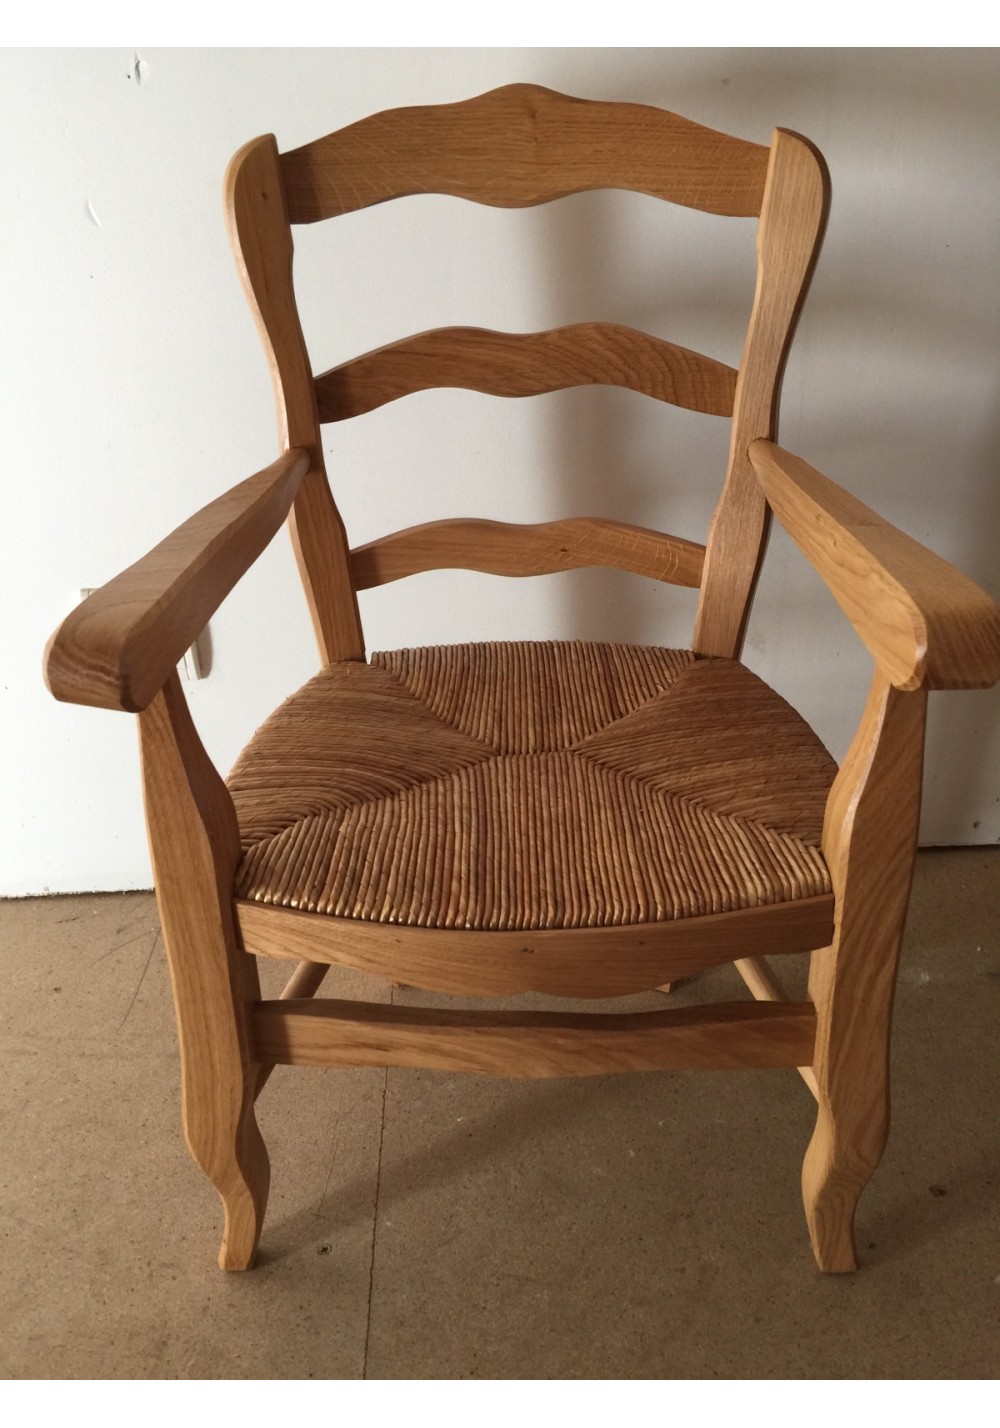 http://www.la-chaise-artisanale.fr/278-big_zoom/fauteuil-enfant-baby.jpg